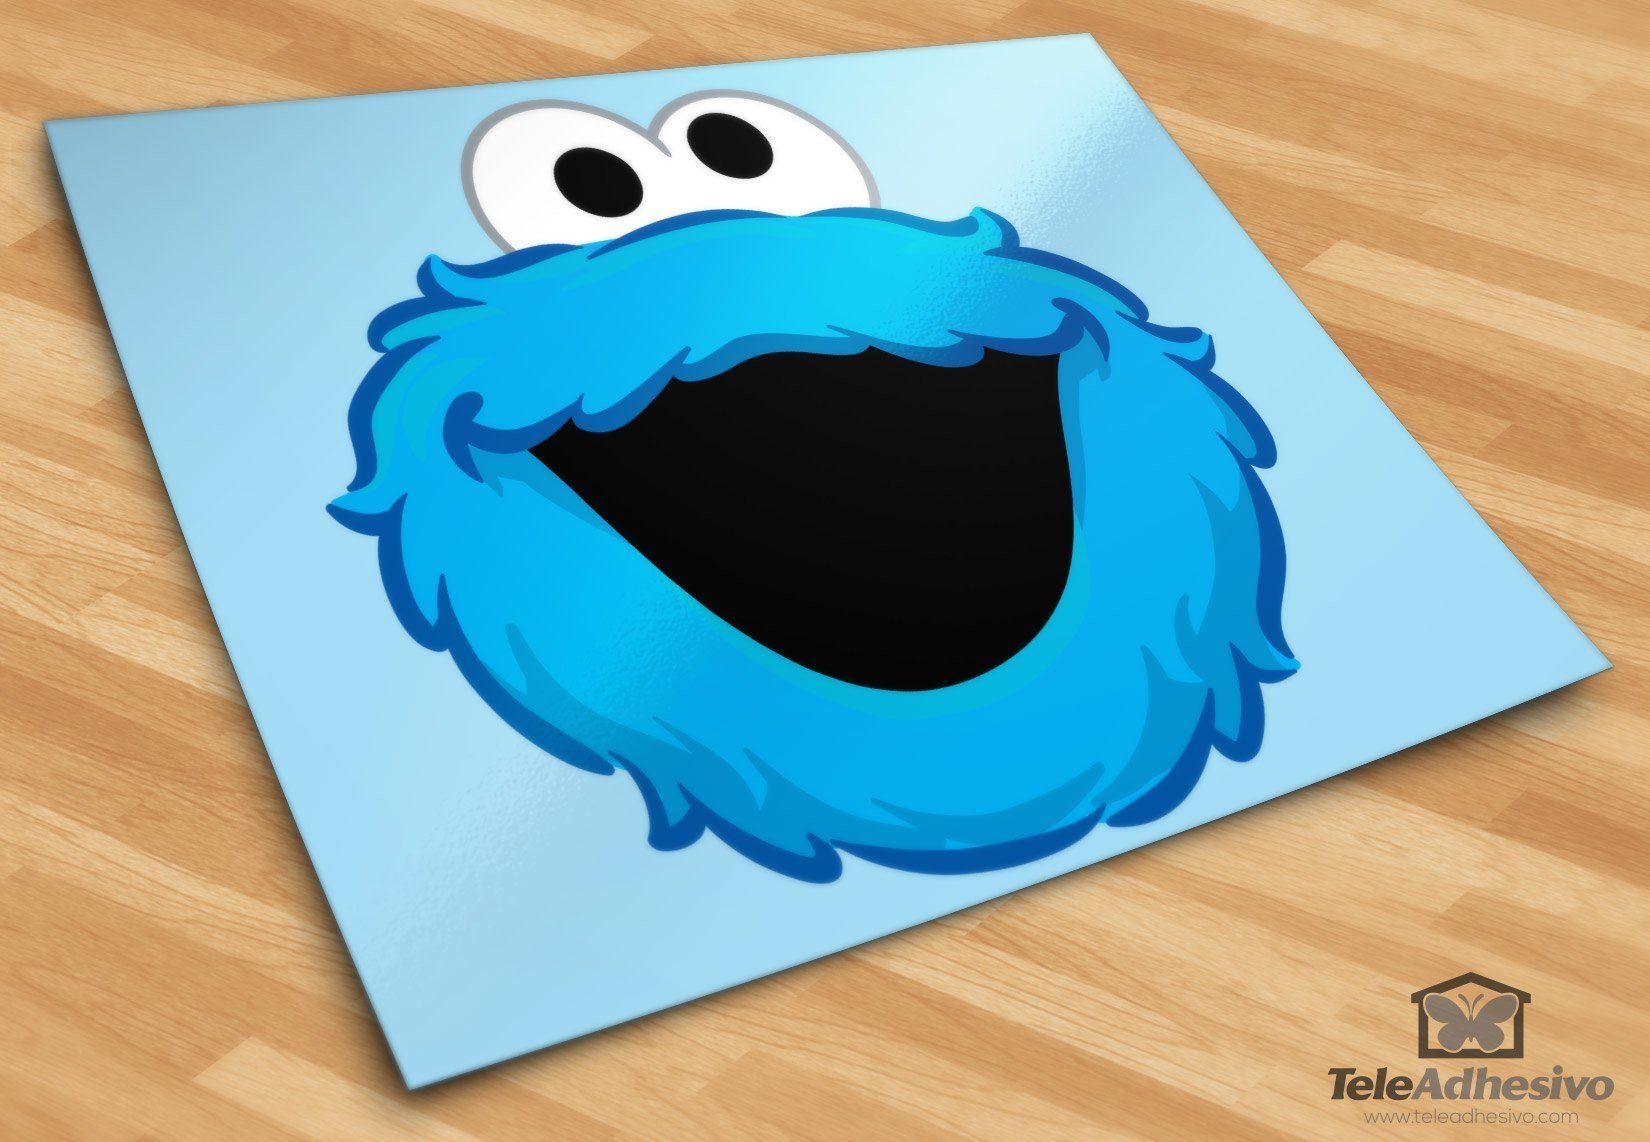 Stickers pour enfants: Rire de cookies Monster